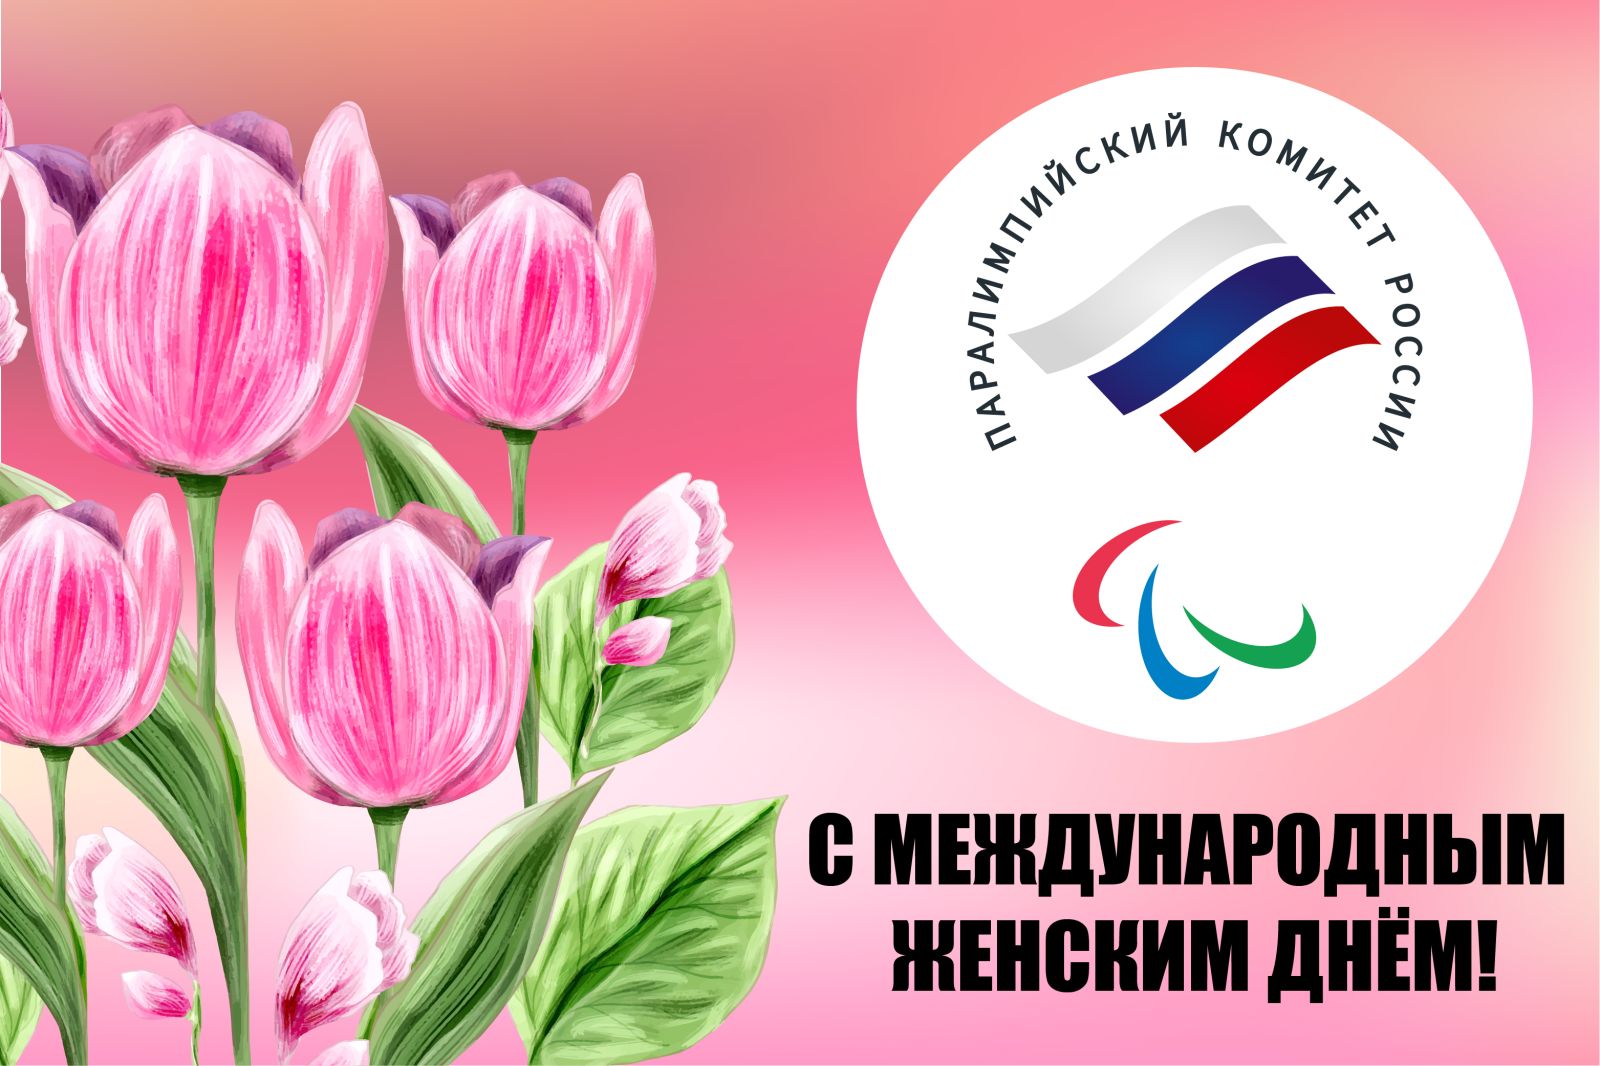 Паралимпийский комитет России поздравляет всех женщин с Международным женским днем - 8 марта!